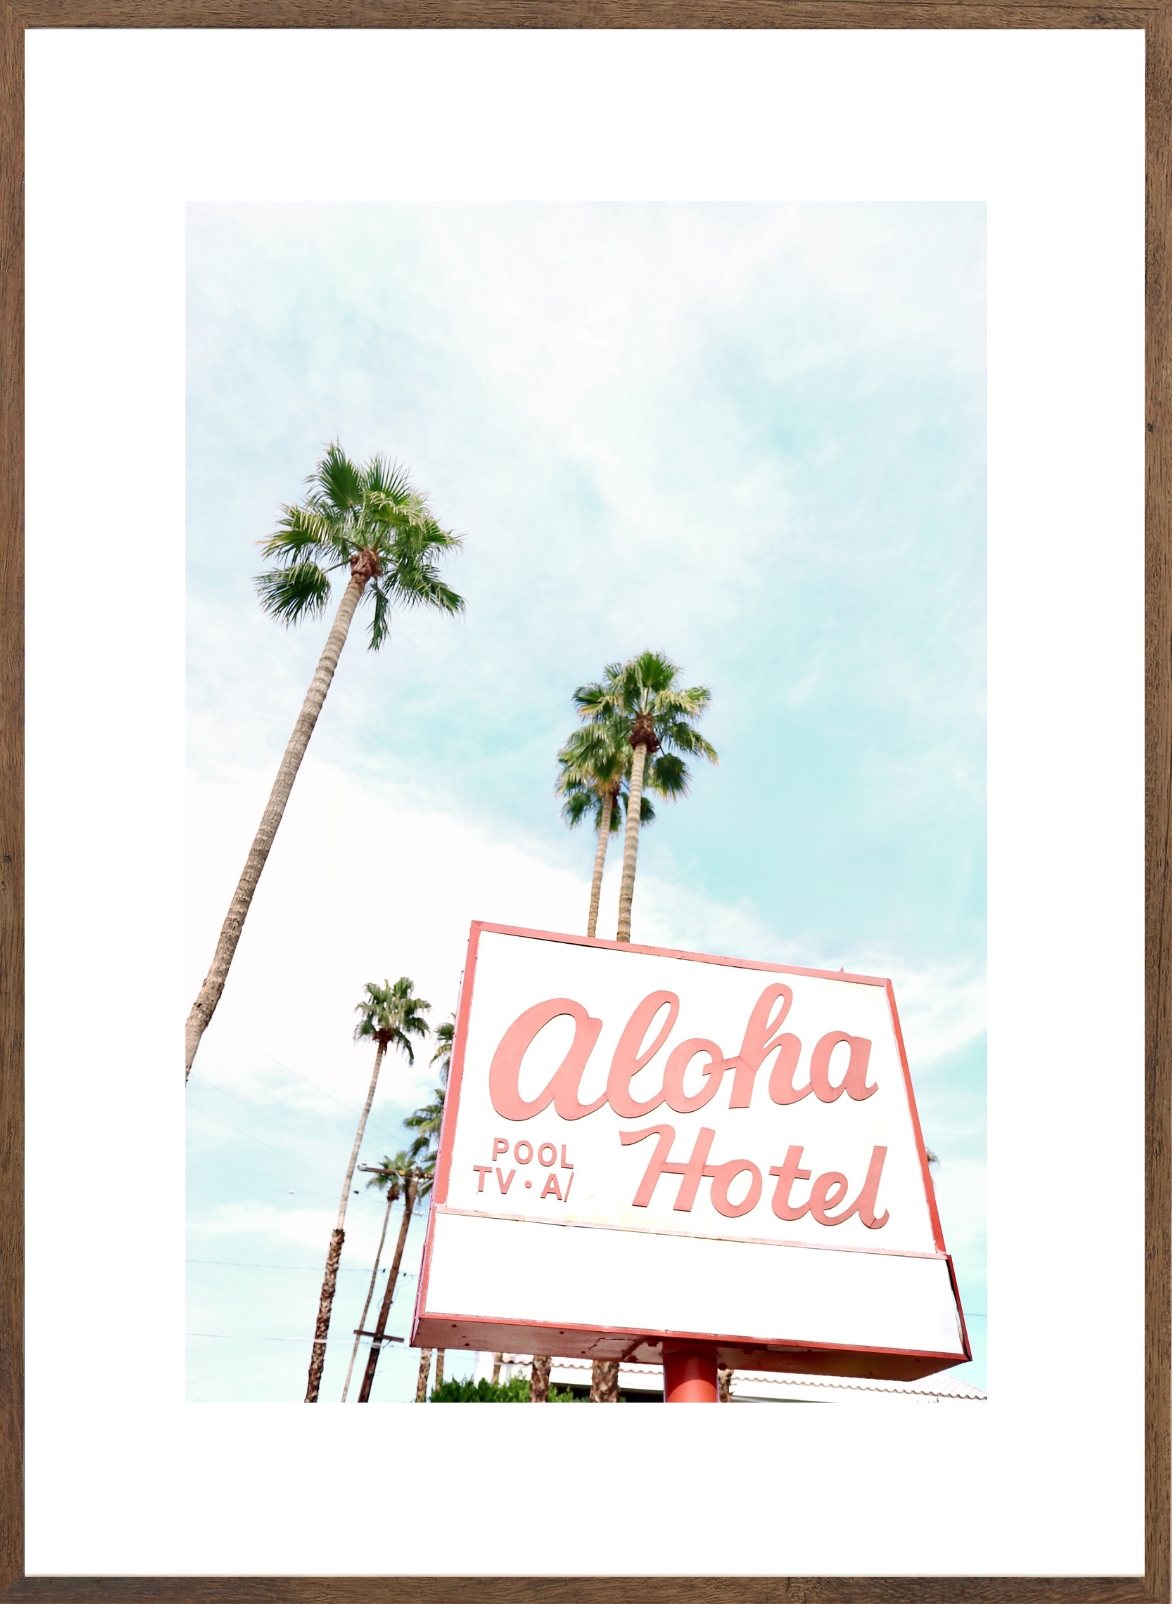 Aloha Hotel